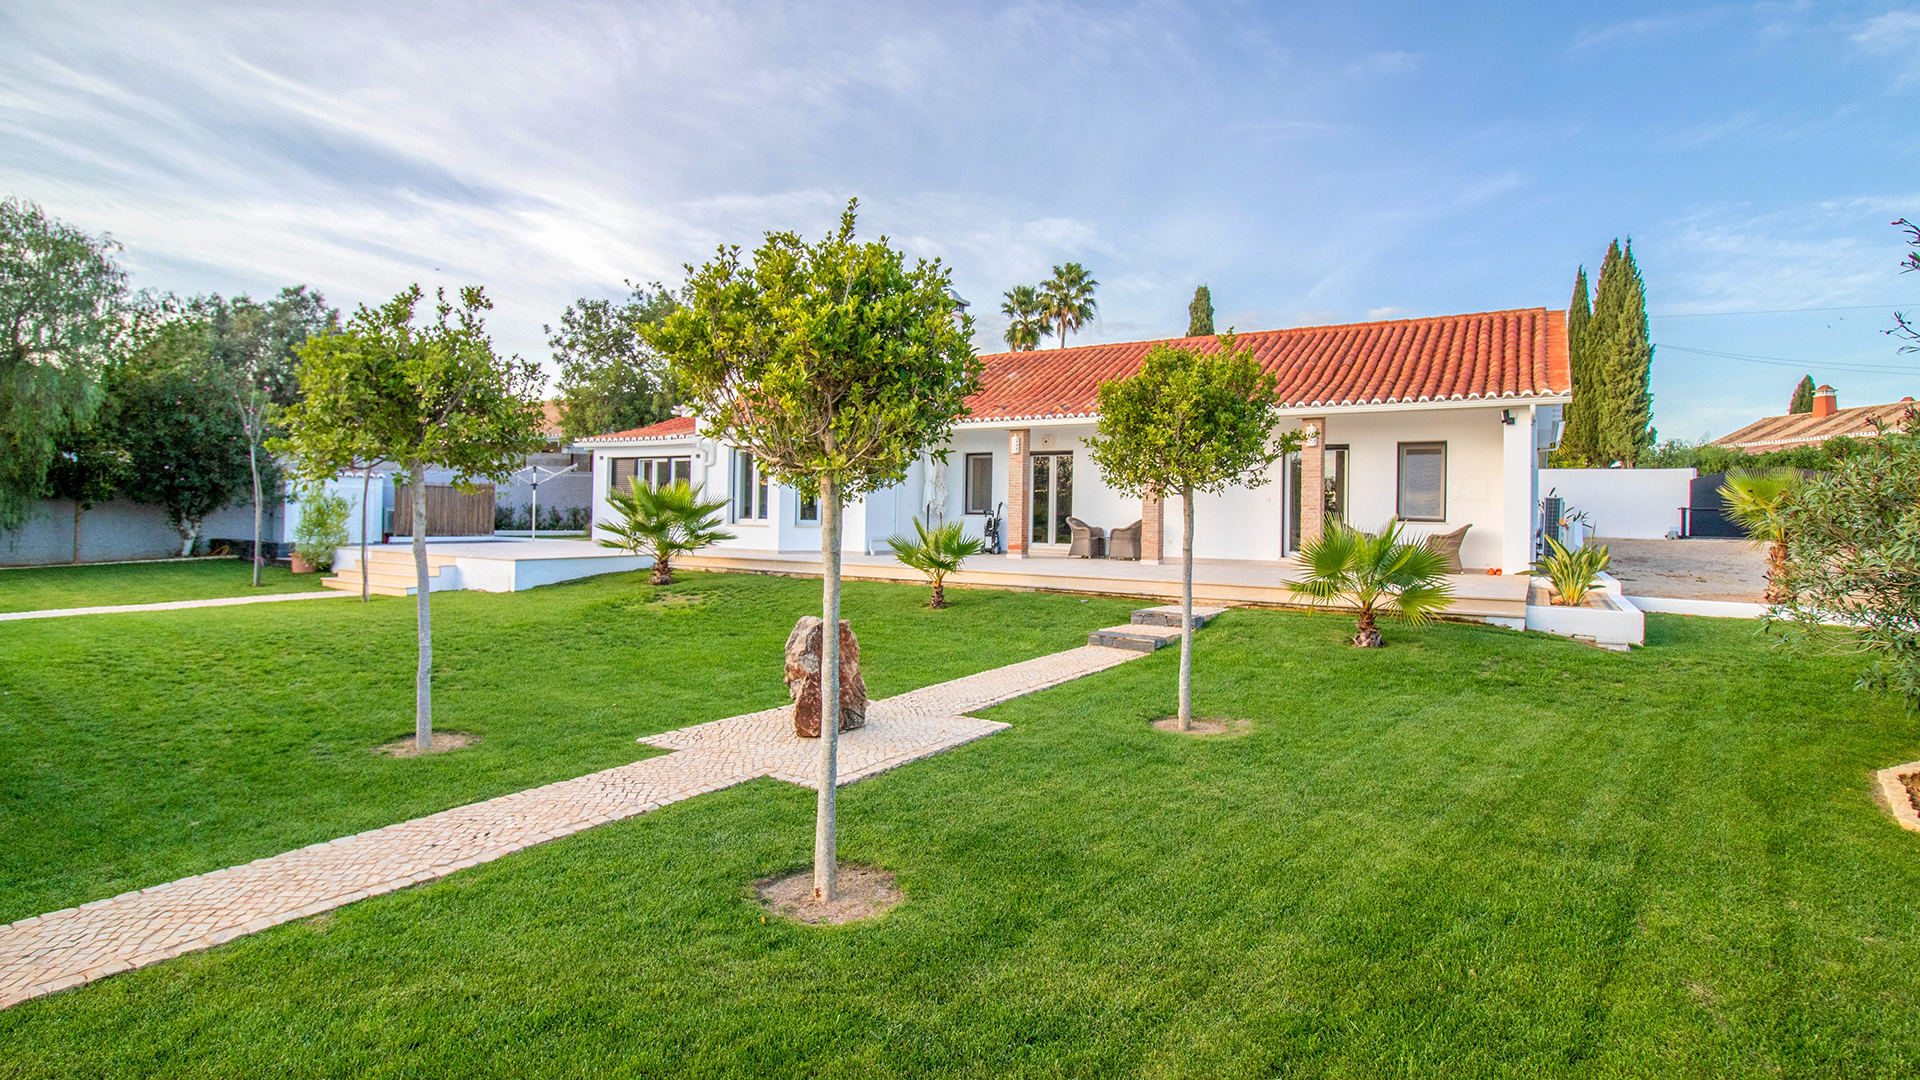 Moderne und luxuriöse 4 SZ Villa mit Pool und Nebengebäude Nahe Lagoa, West Algarve | PPP2226 Moderne und luxuriöse Villa mit vier Schlafzimmern und Nebengebäude in einer ruhigen und beliebten Wohngegend. Dieses Jahr komplett renoviert und mit sehr hoher Spezifikation und Qualität ausgestattet.